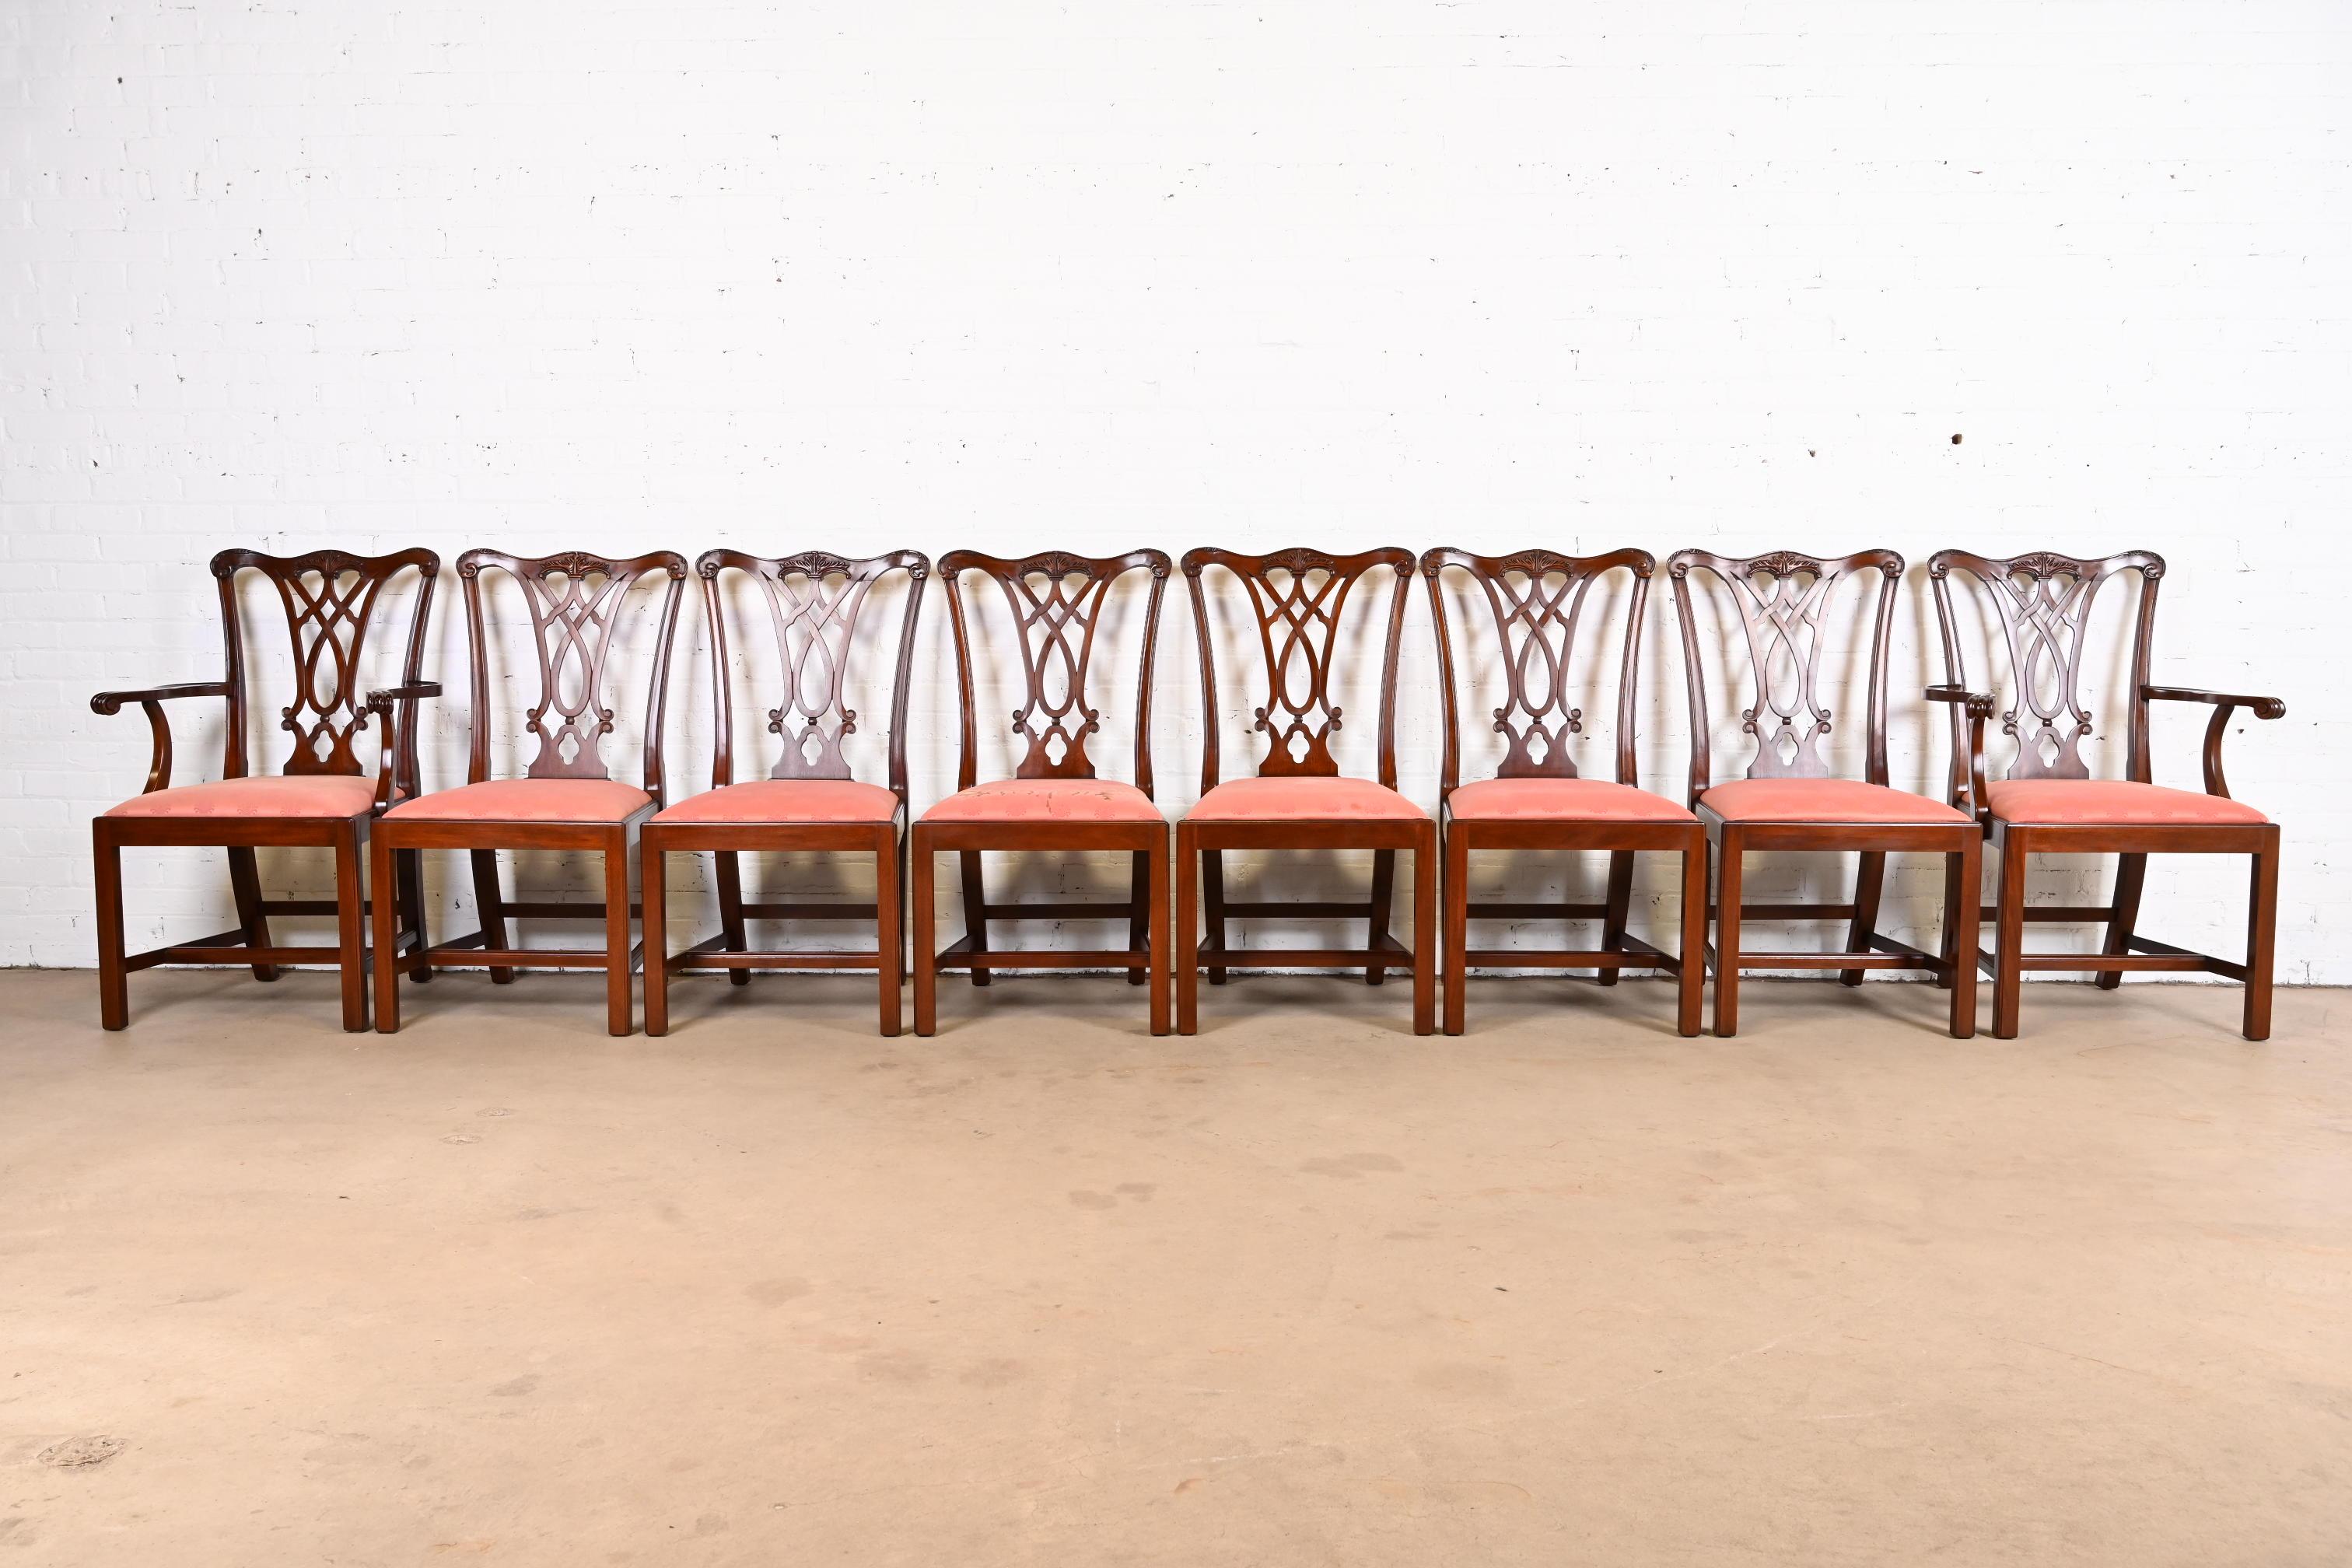 Ein prächtiger Satz von acht Esszimmerstühlen im Chippendale- oder georgianischen Stil

Von Henkel Harris

USA, 1990

Rahmen aus massivem Mahagoni, mit gepolsterten Sitzen.

Maße der Beistellstühle: 20,5 